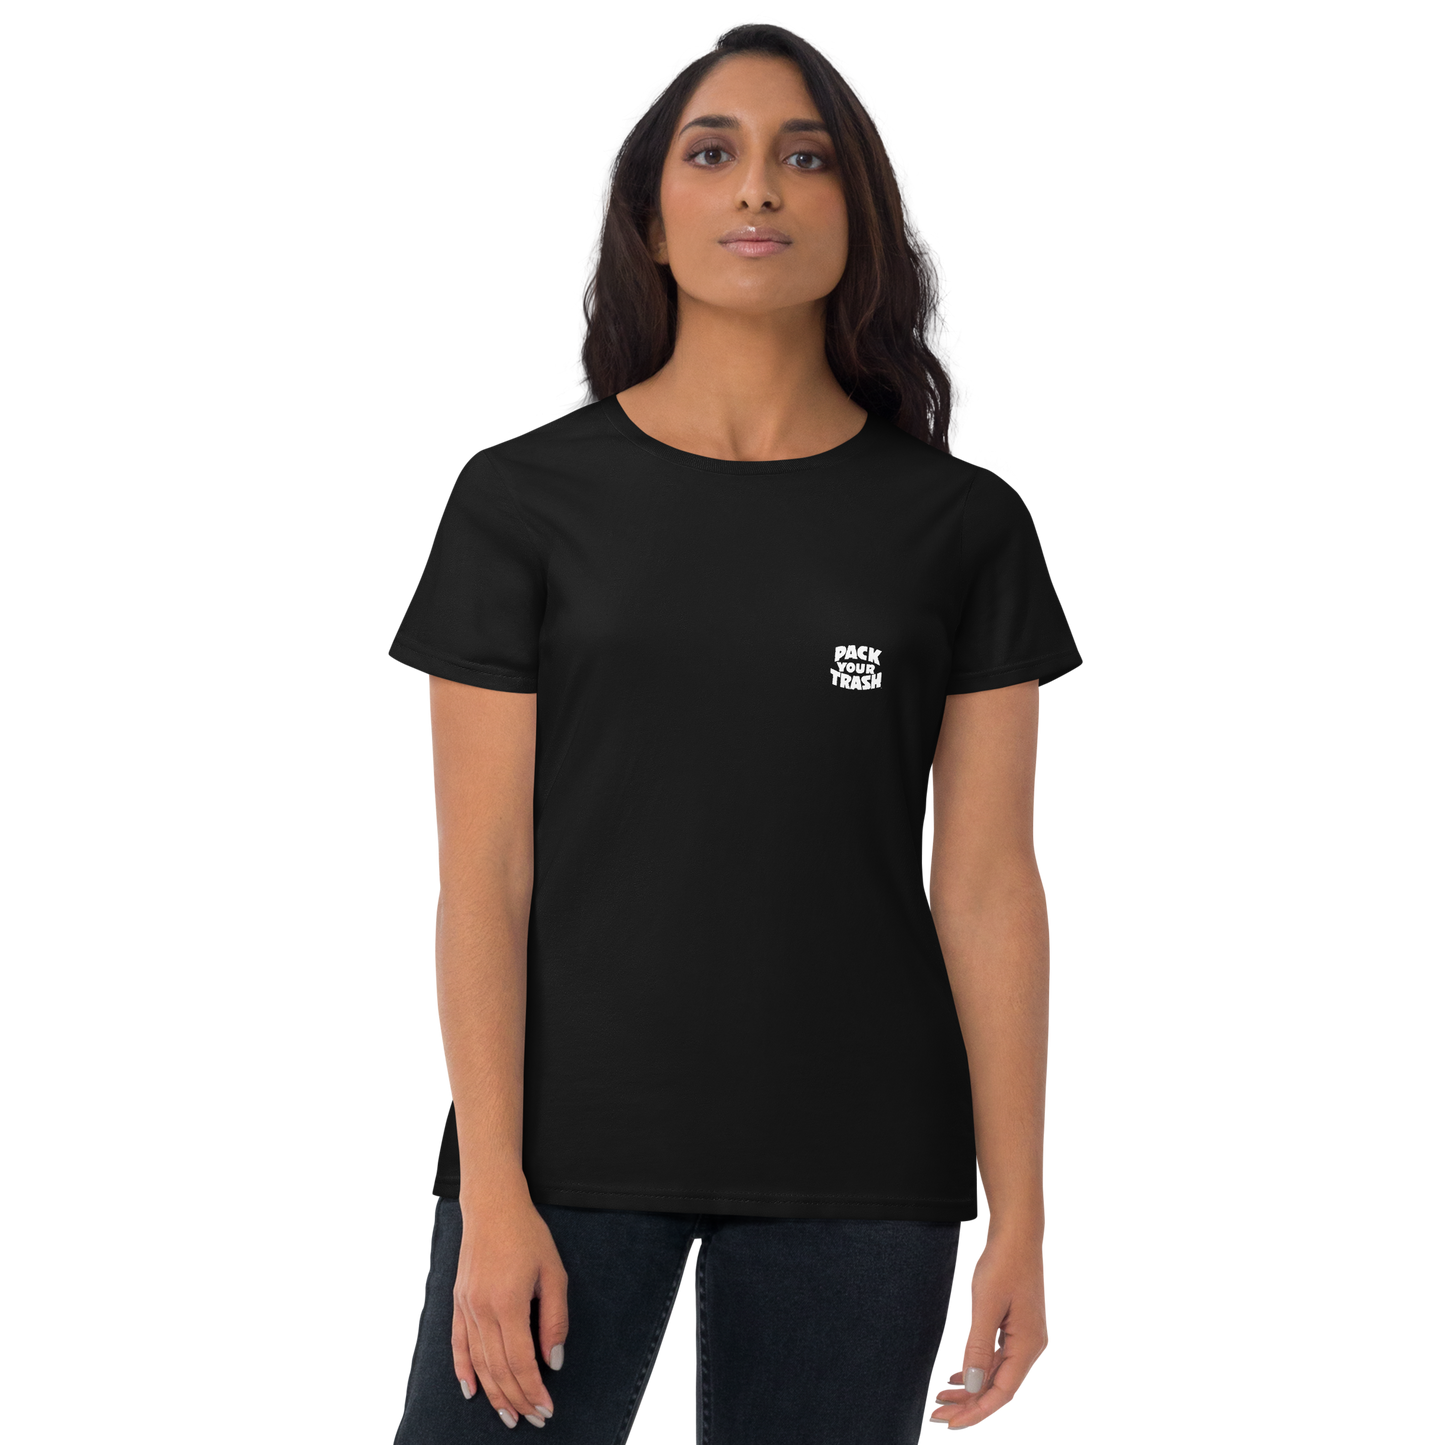 Snowboard Geek - Pack Your Trash © Original - Women's short sleeve t-shirt